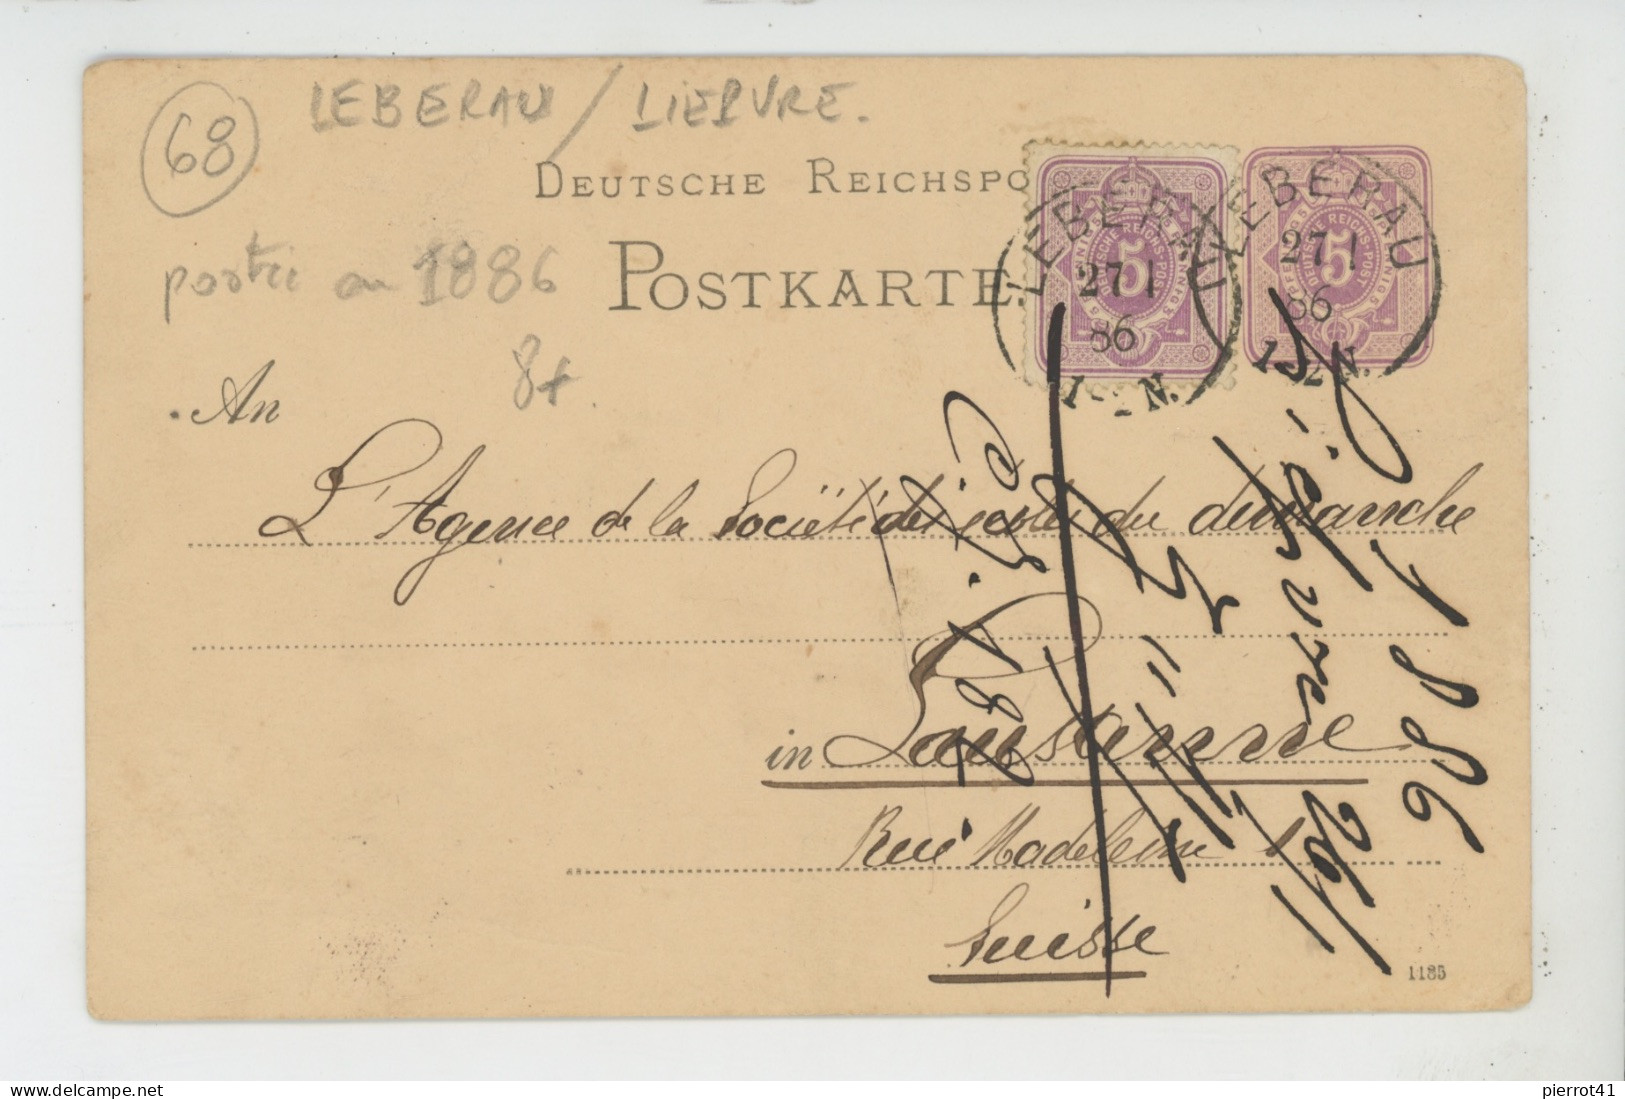 ALSACE - LIEPVRE - LEBERAU - Carte De Correspondance DEUTSCHE REICHSPOST Avec Timbre Et Cachet Ambulant De 1886 - Lièpvre